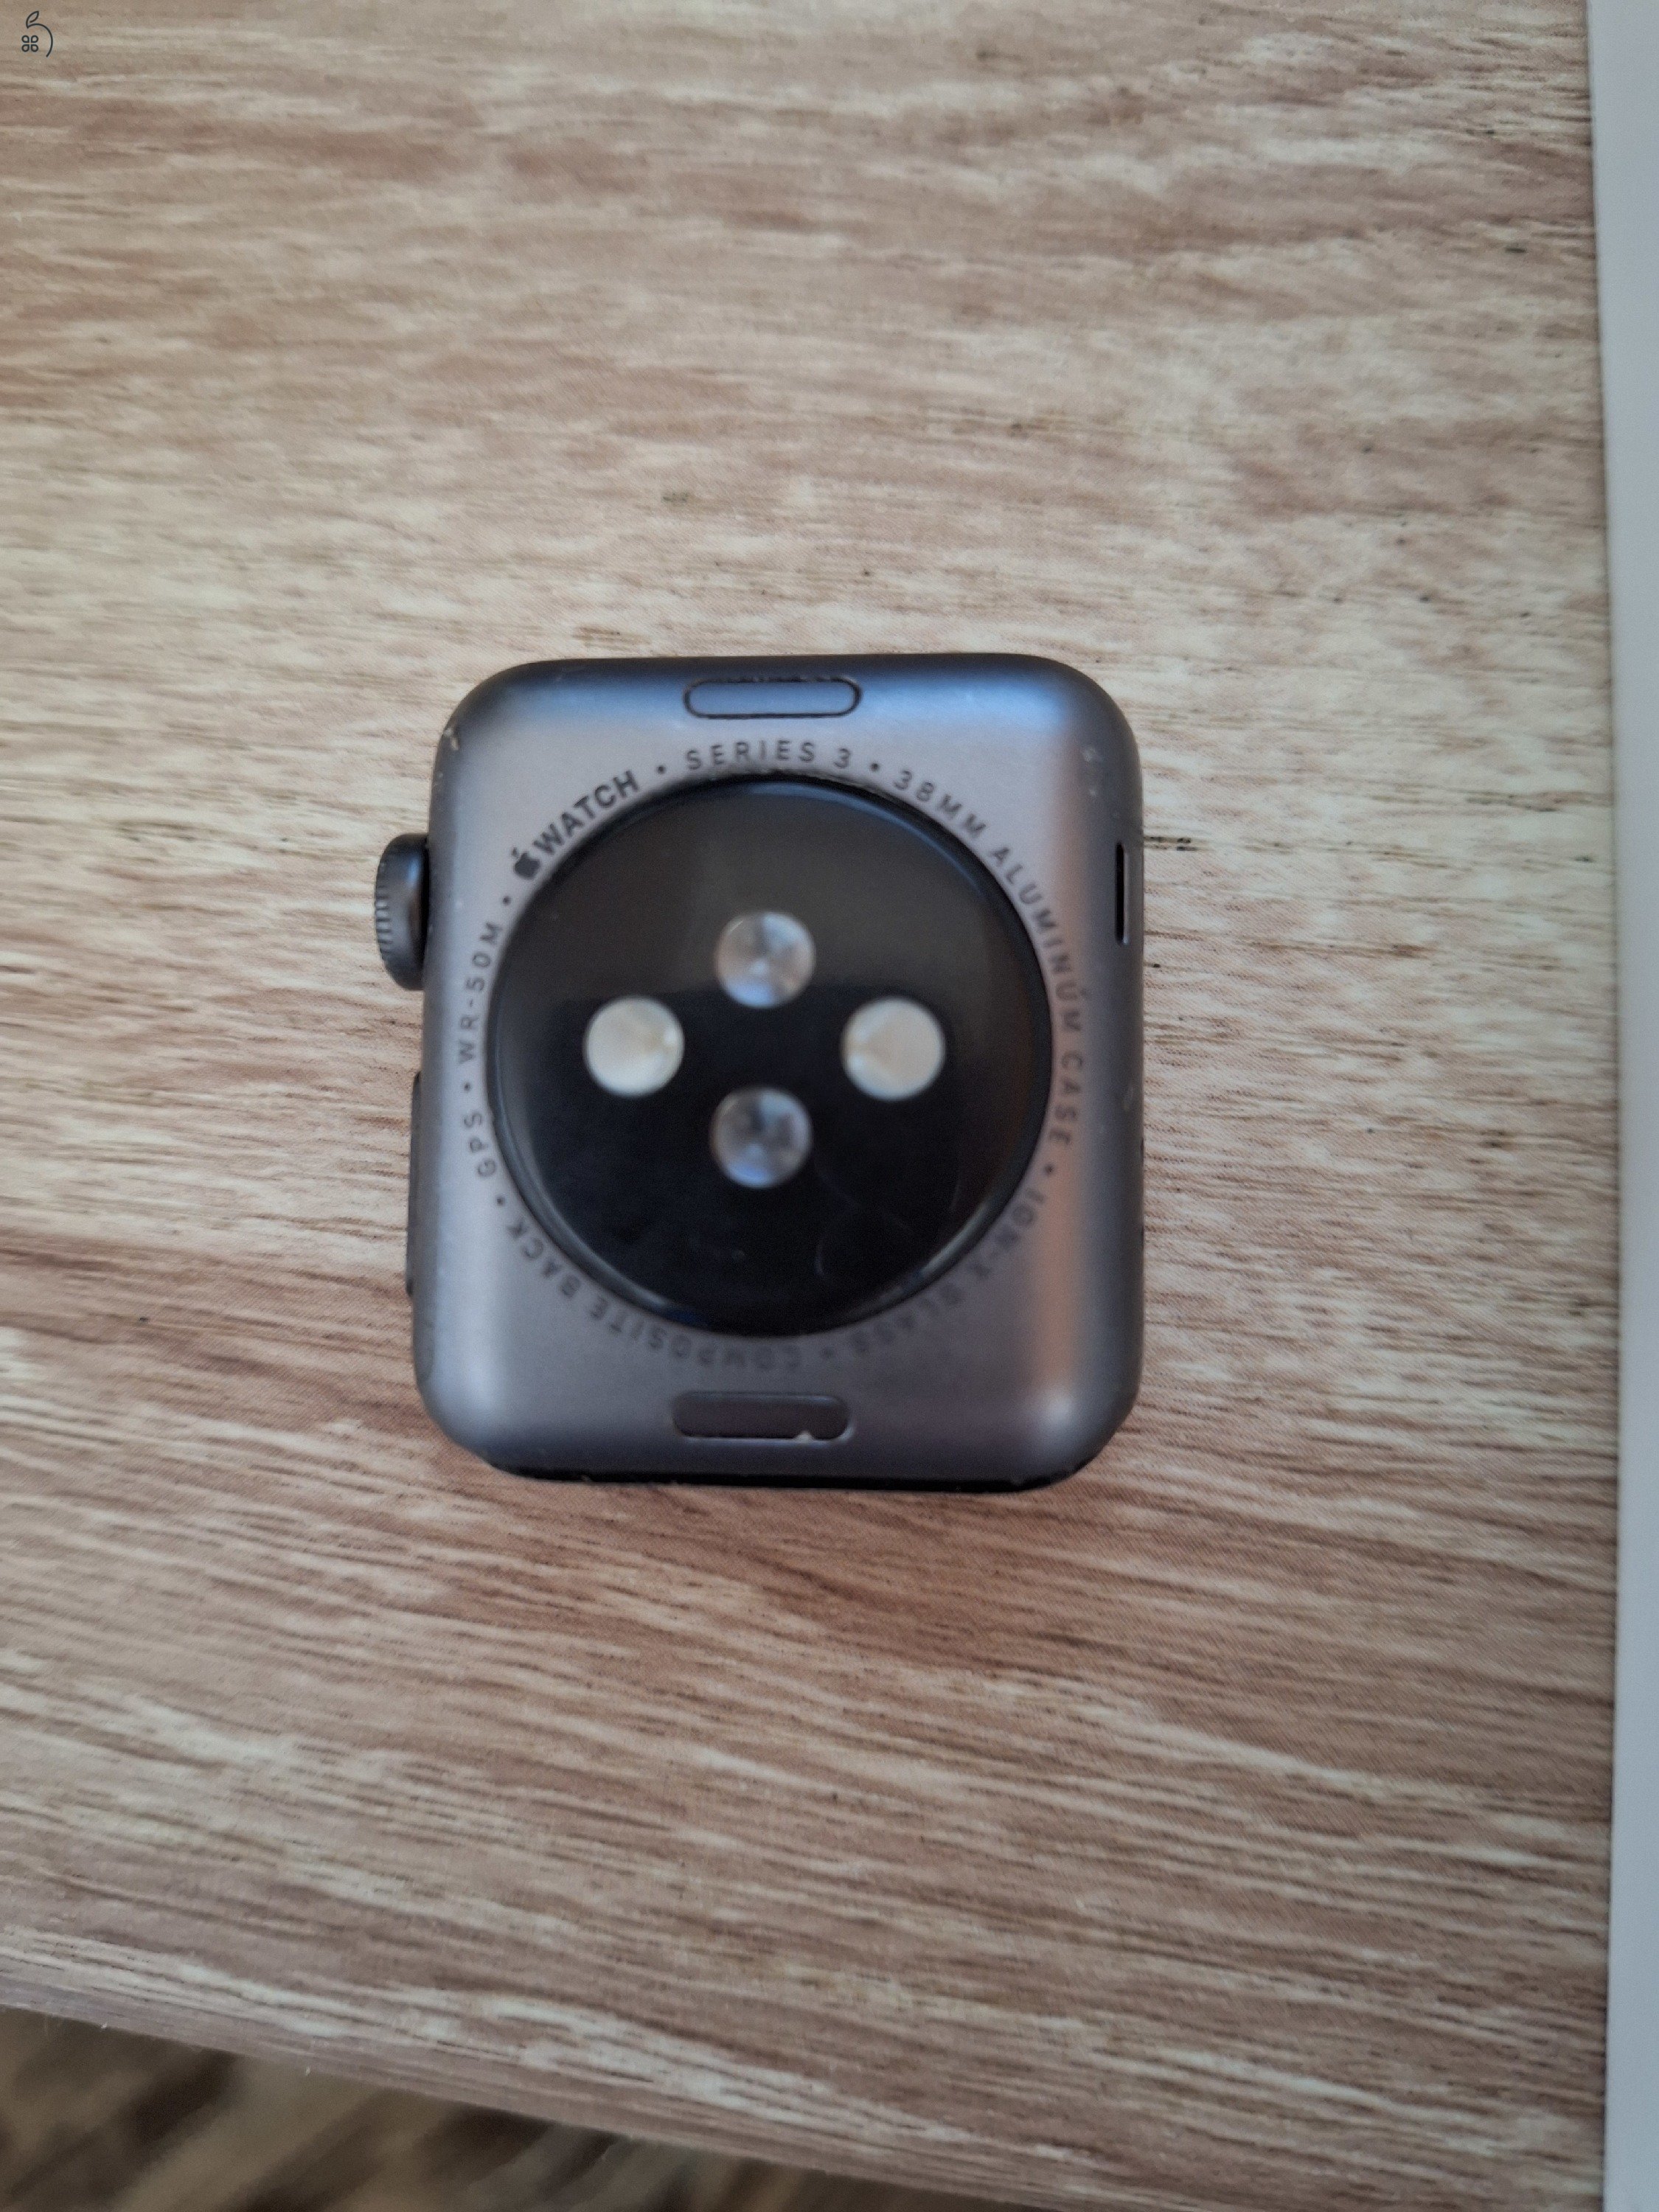 Apple watch s3 38 mm